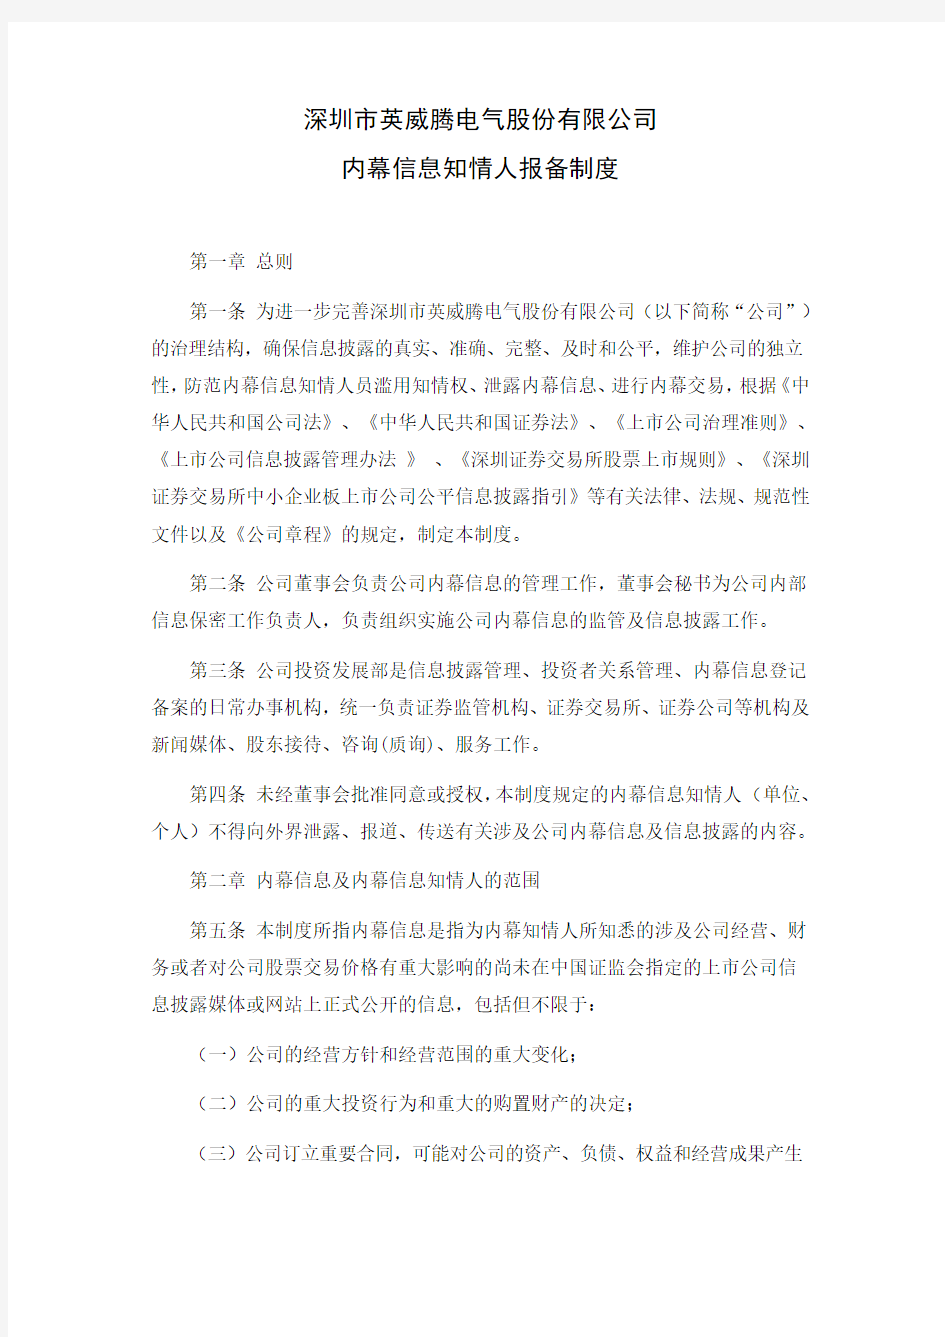 深圳市英威腾电气股份有限公司内幕信息知情人报备制度